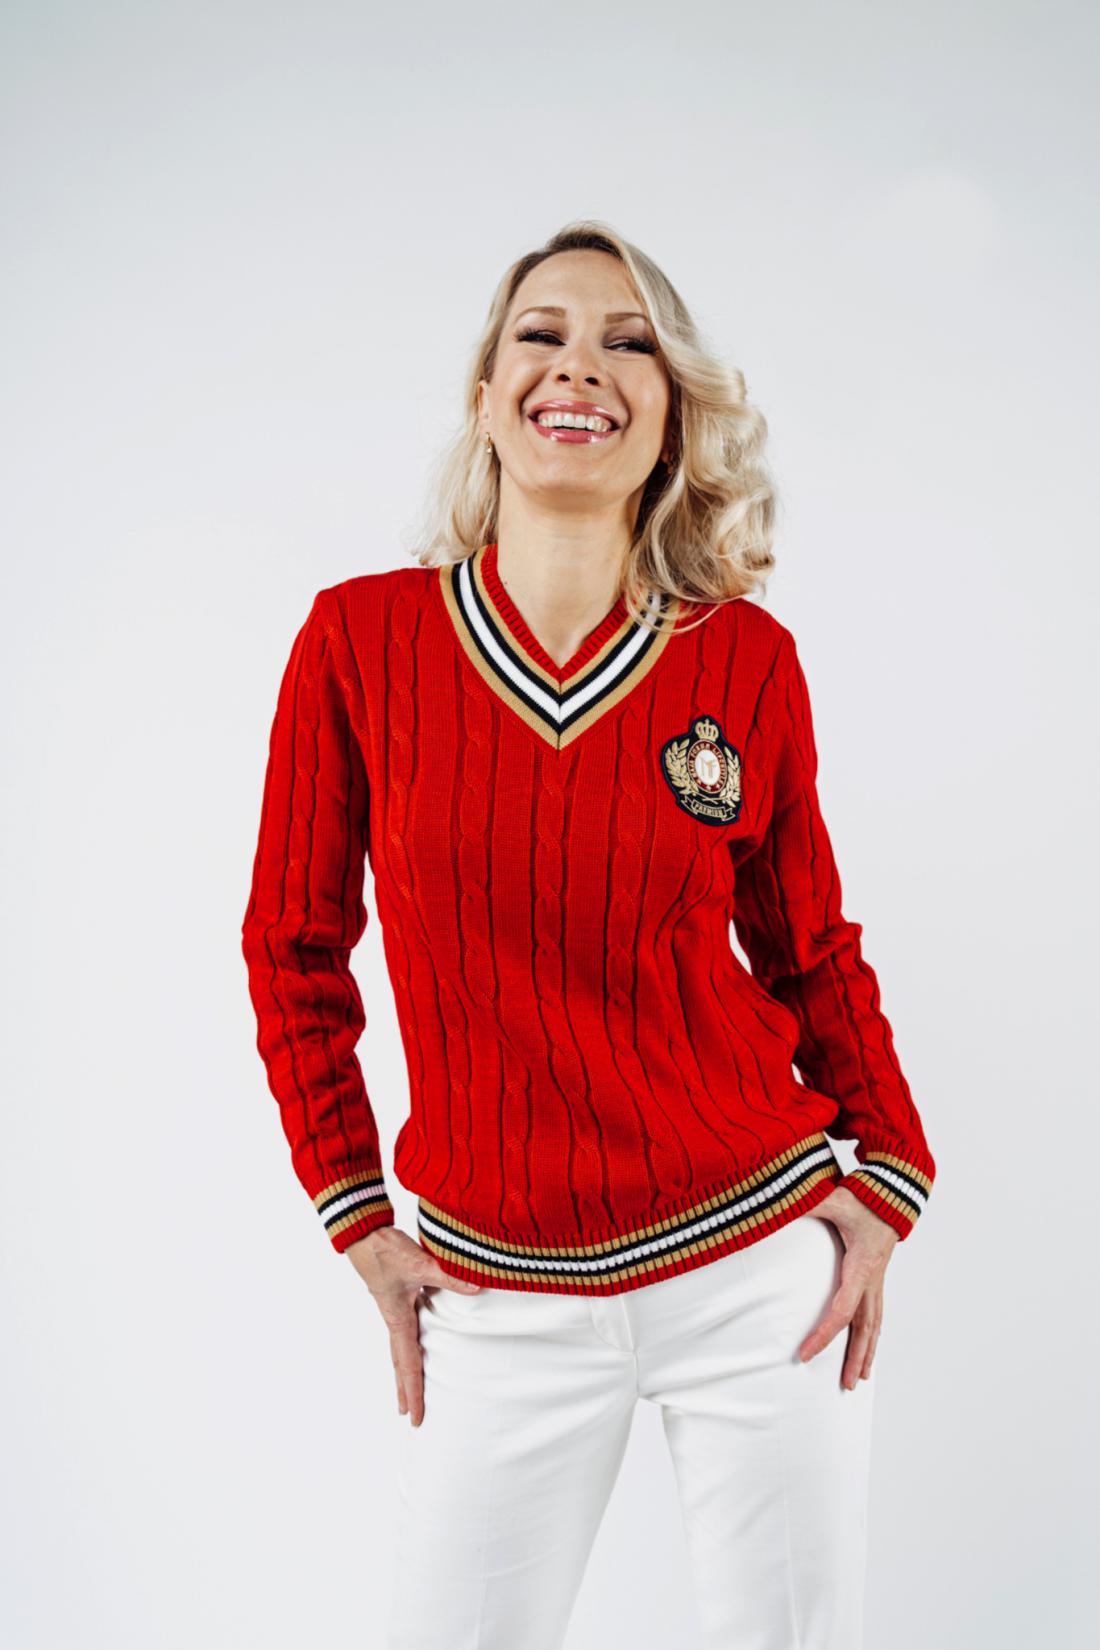 Pleten pulover s podpisom oblikovalke Maje Ferme stane 149 evrov.